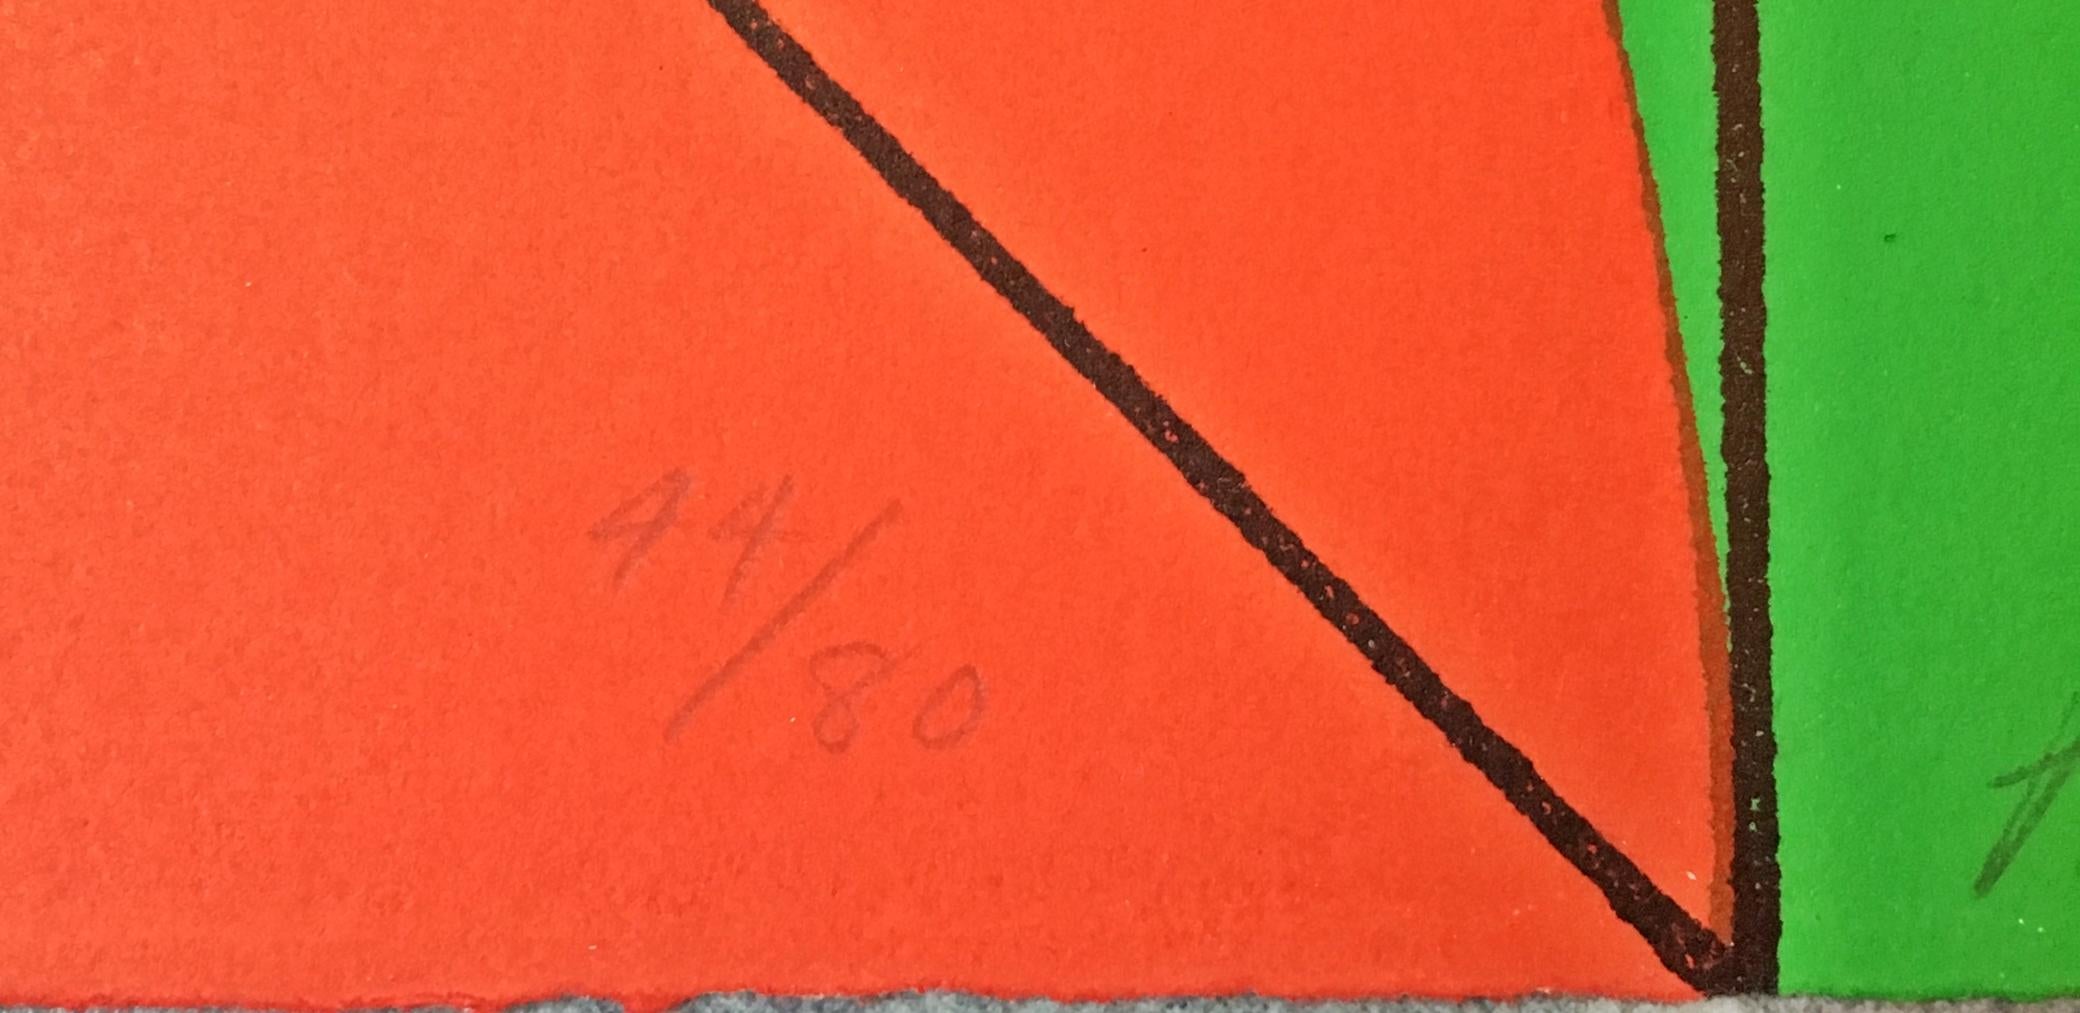 Arnaldo Pomodoro
Ohne Titel Geometrische Abstraktion aus der Mitte des Jahrhunderts, 1968
Siebdruck mit Farben auf Büttenpapier mit geriffelten Kanten
Handsigniert, nummeriert 44 aus der Auflage von 80 und datiert vom Künstler auf der Vorderseite.